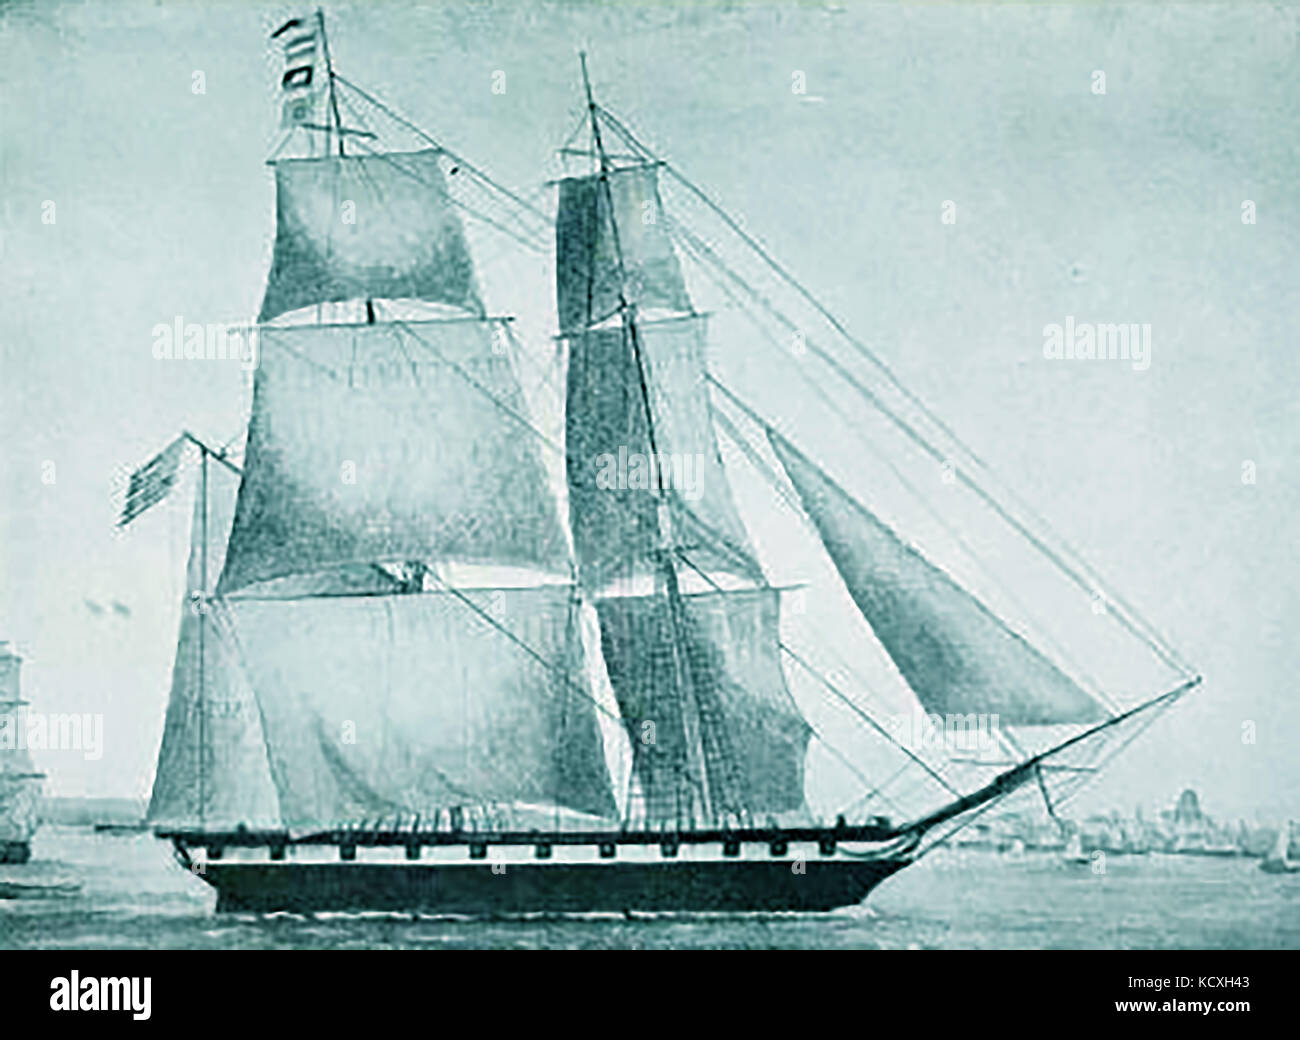 Die 370 Tonnen schwere brig Antilope von Boston, USA. 1843 im East Boston für Russel & Co für den Opiumhandel im Kanton zu Indien route gebaut. Stockfoto